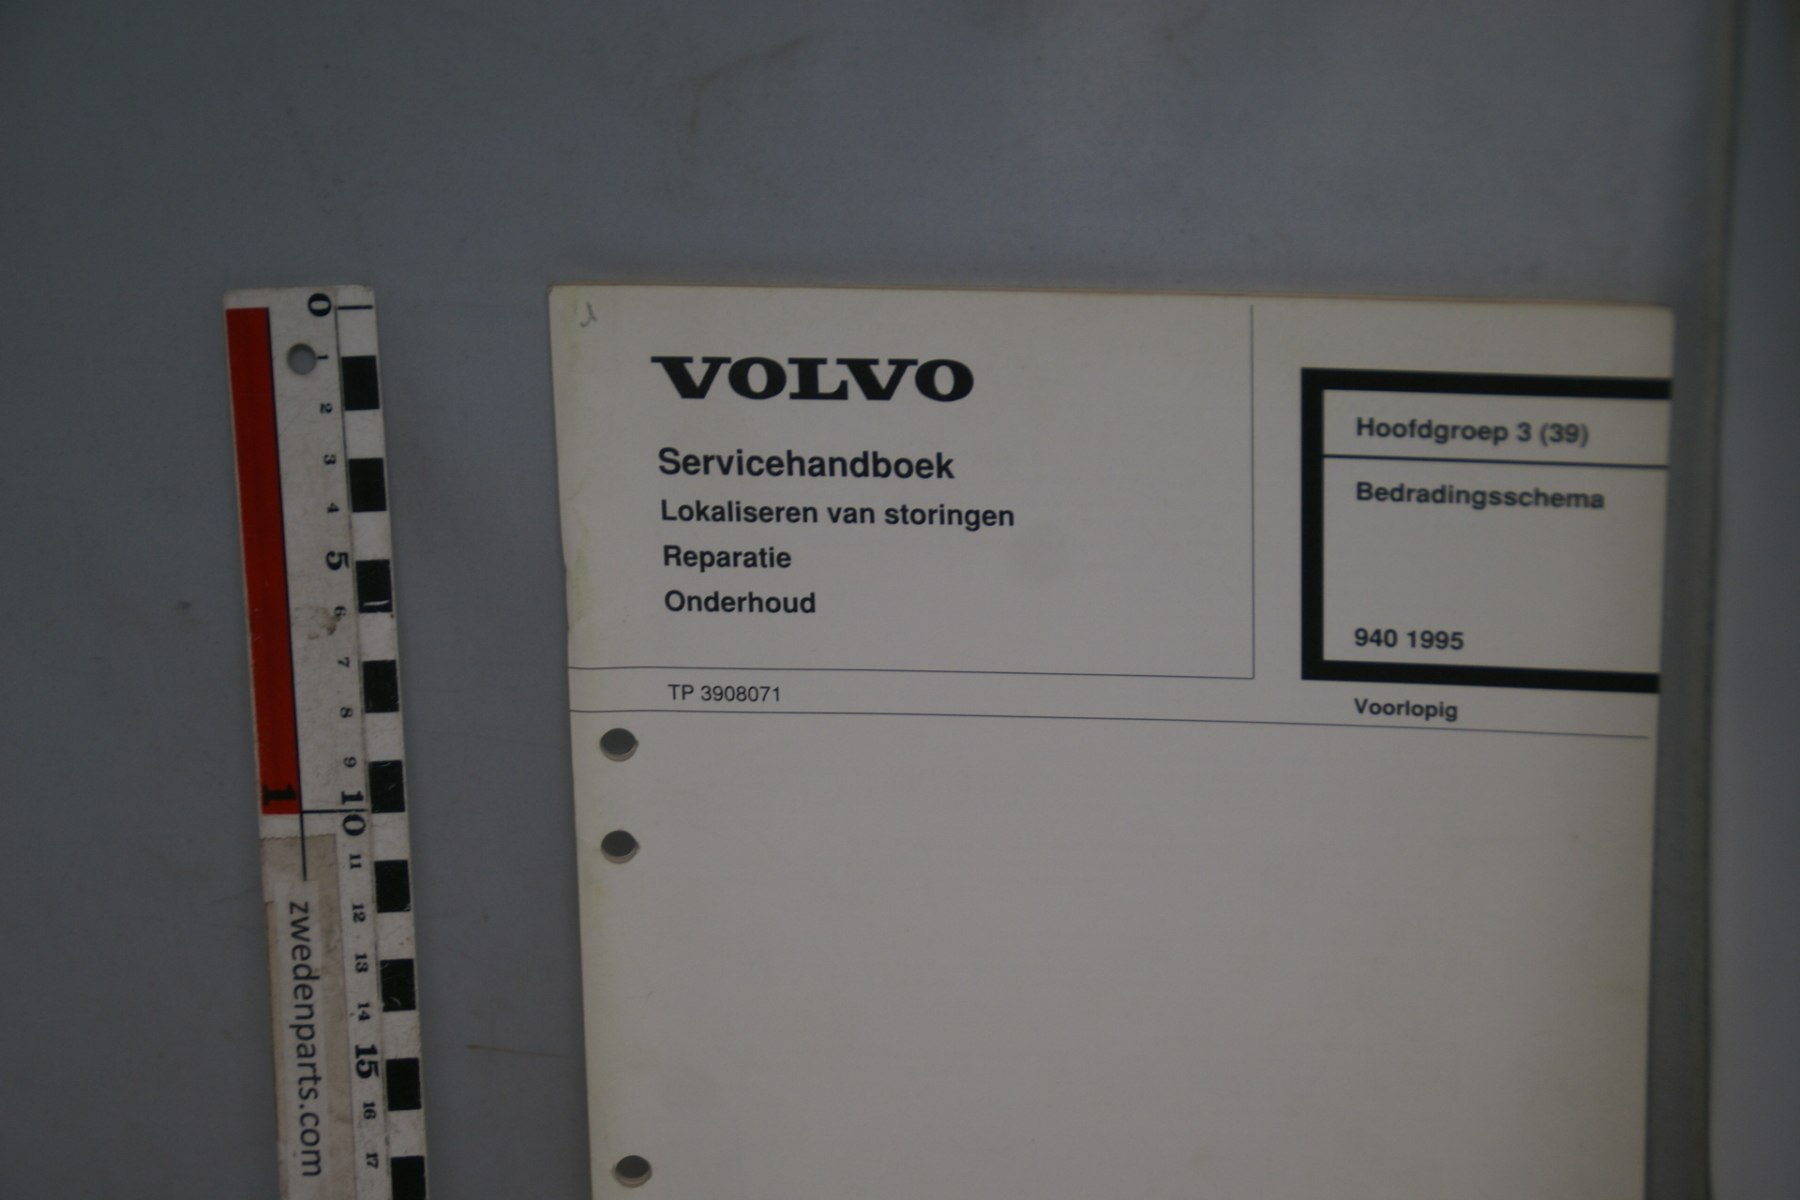 DSC06165 1994 servicehandboek bedradingsschema 3(39), origineel Volvo 940,  1 van 450 nr TP39080